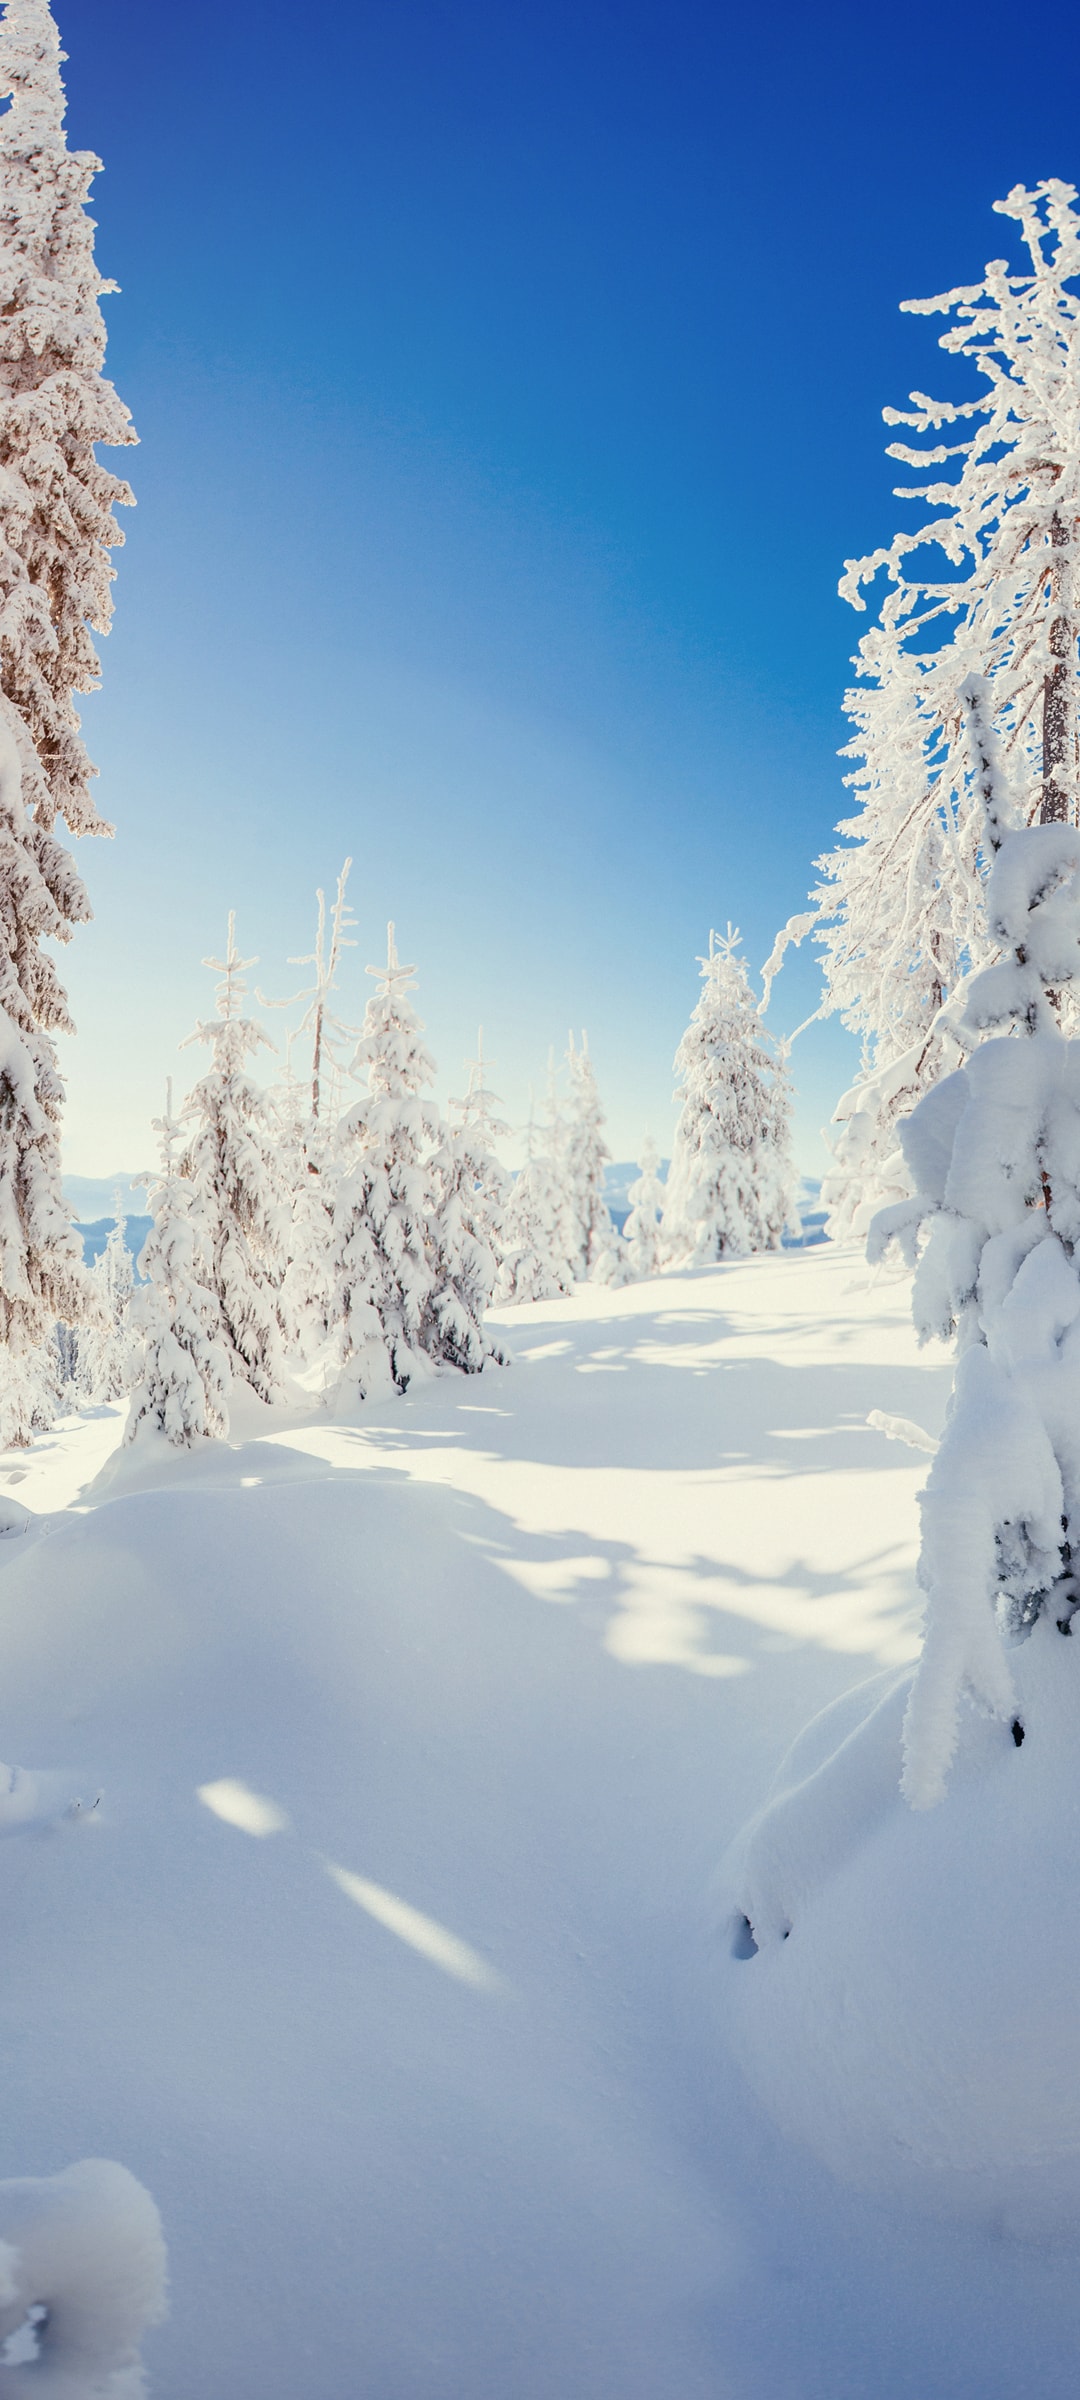 冬季大雪覆盖树林冰天雪地绝美雪景